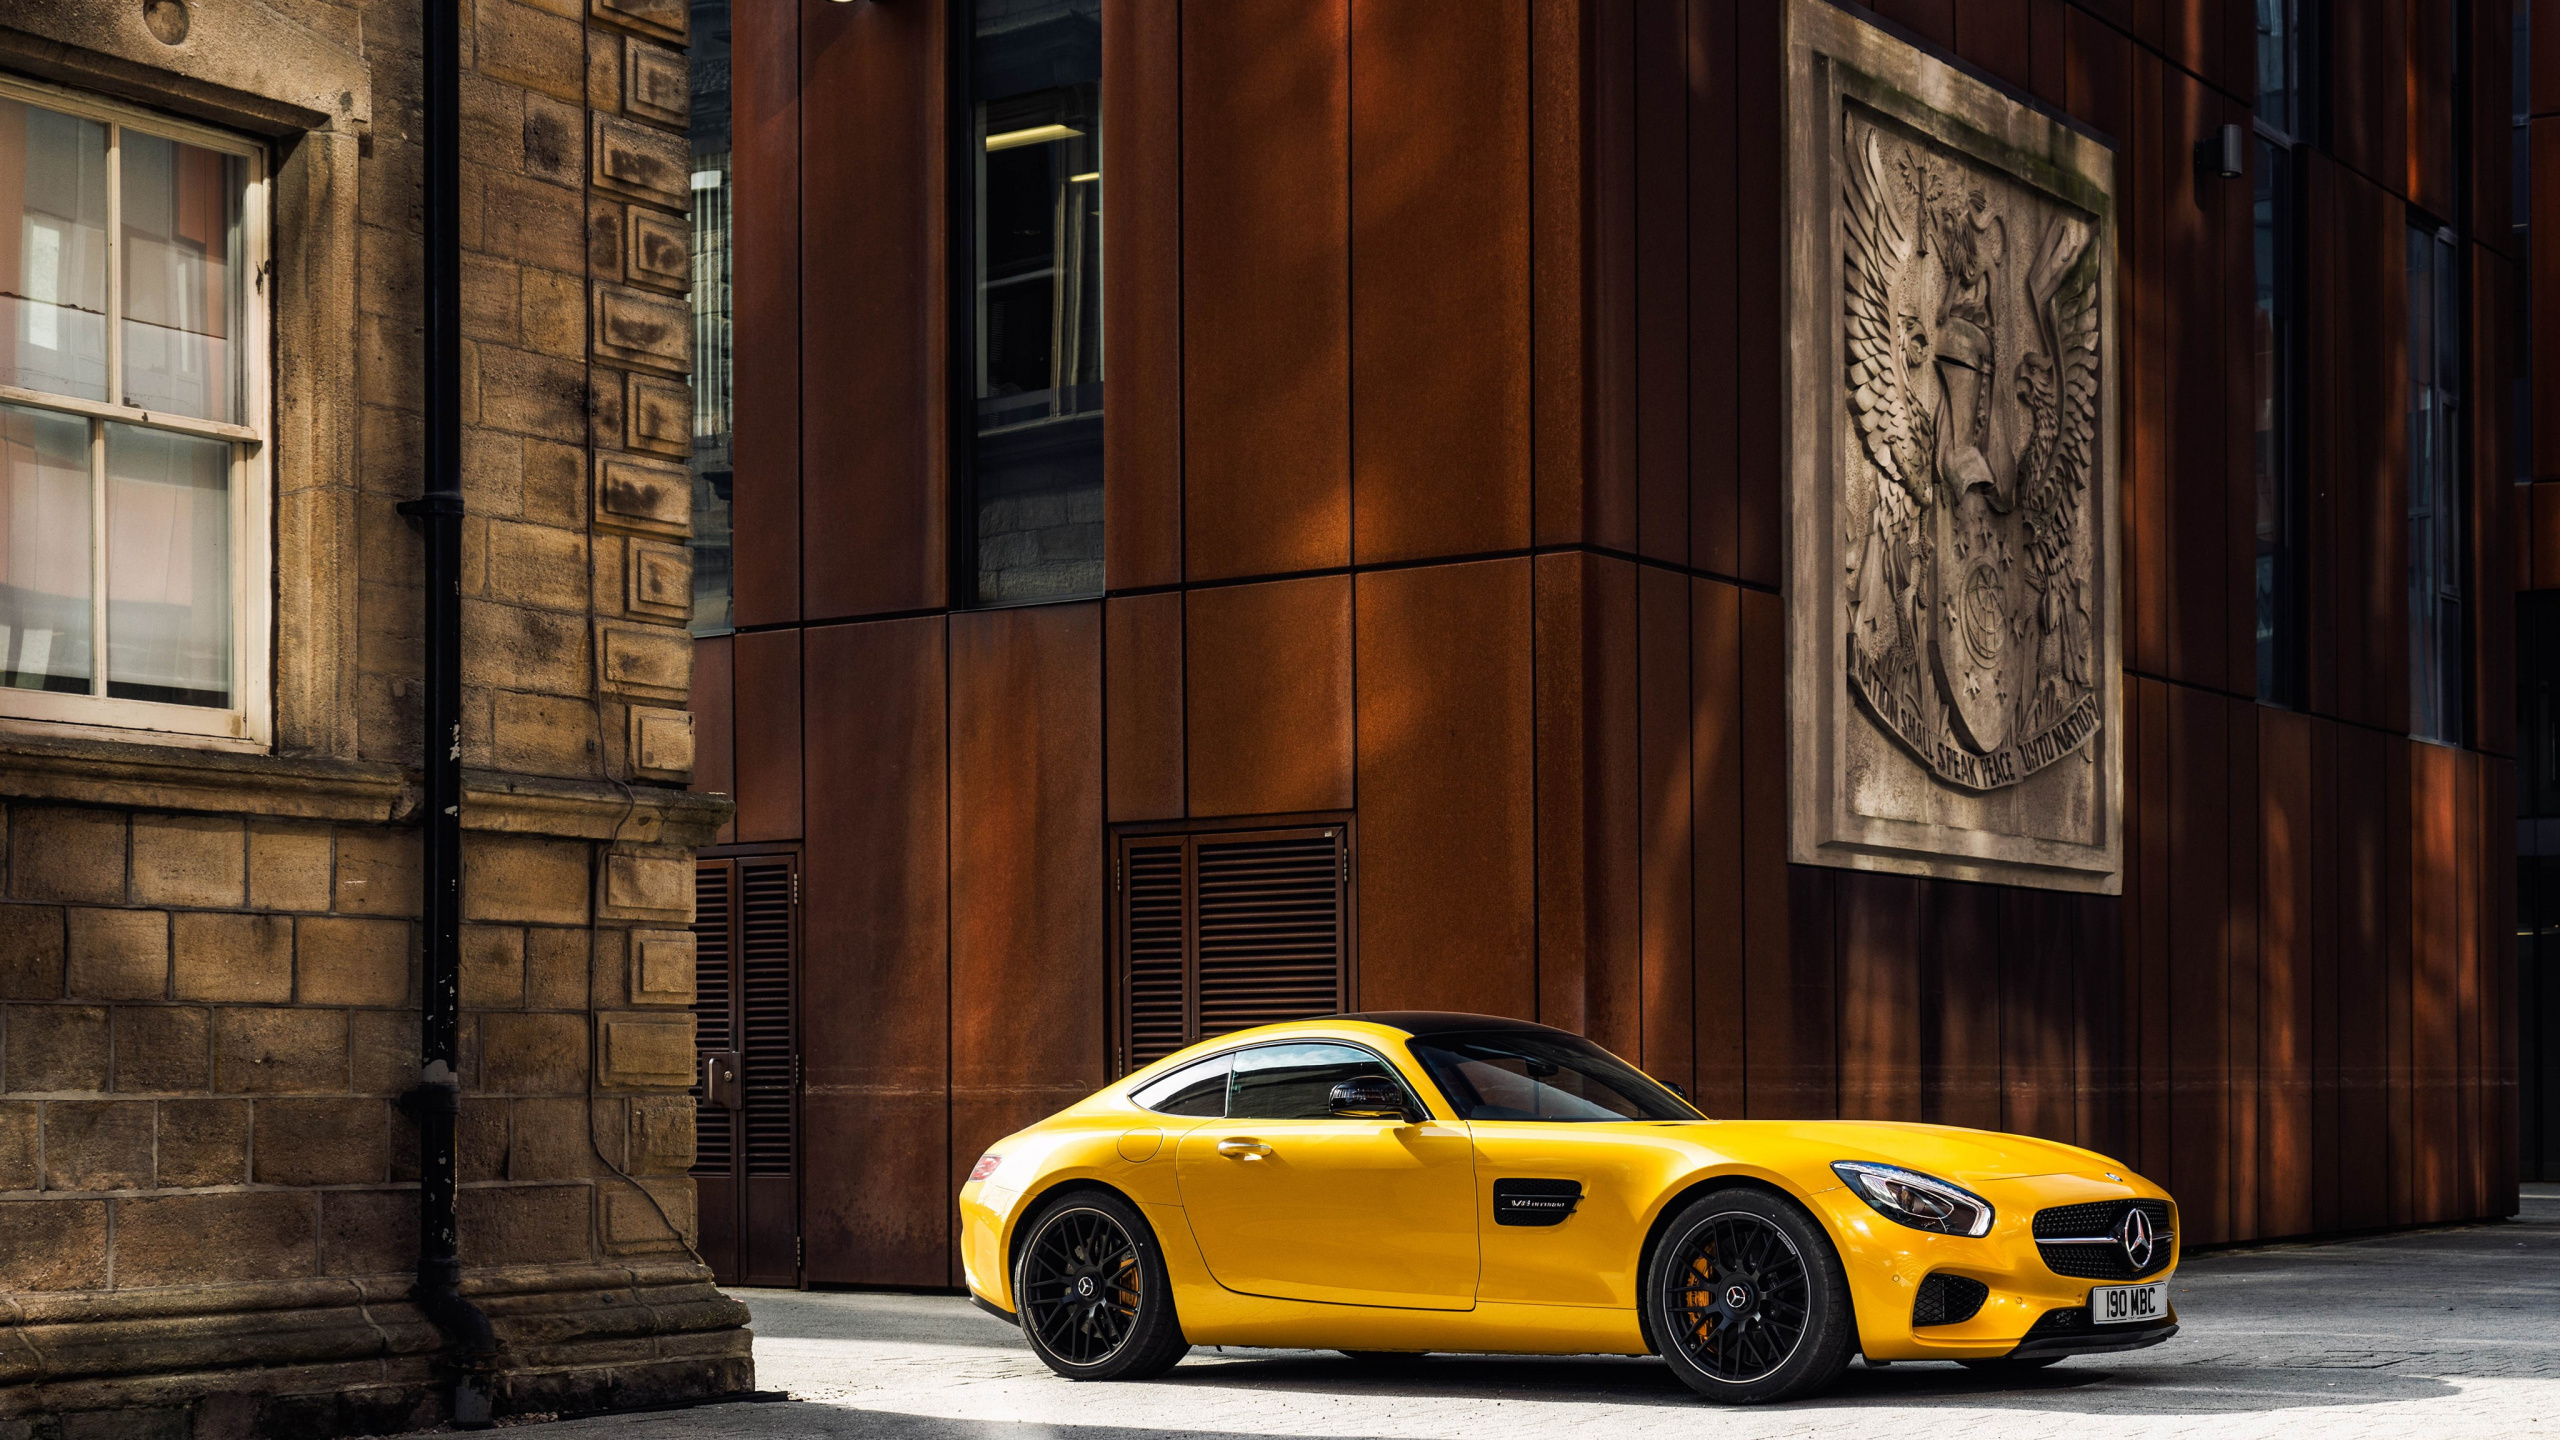 豪华旅行车, 黄色的, 奔驰amg, 梅赛德斯-奔驰s级, 街 壁纸 2560x1440 允许